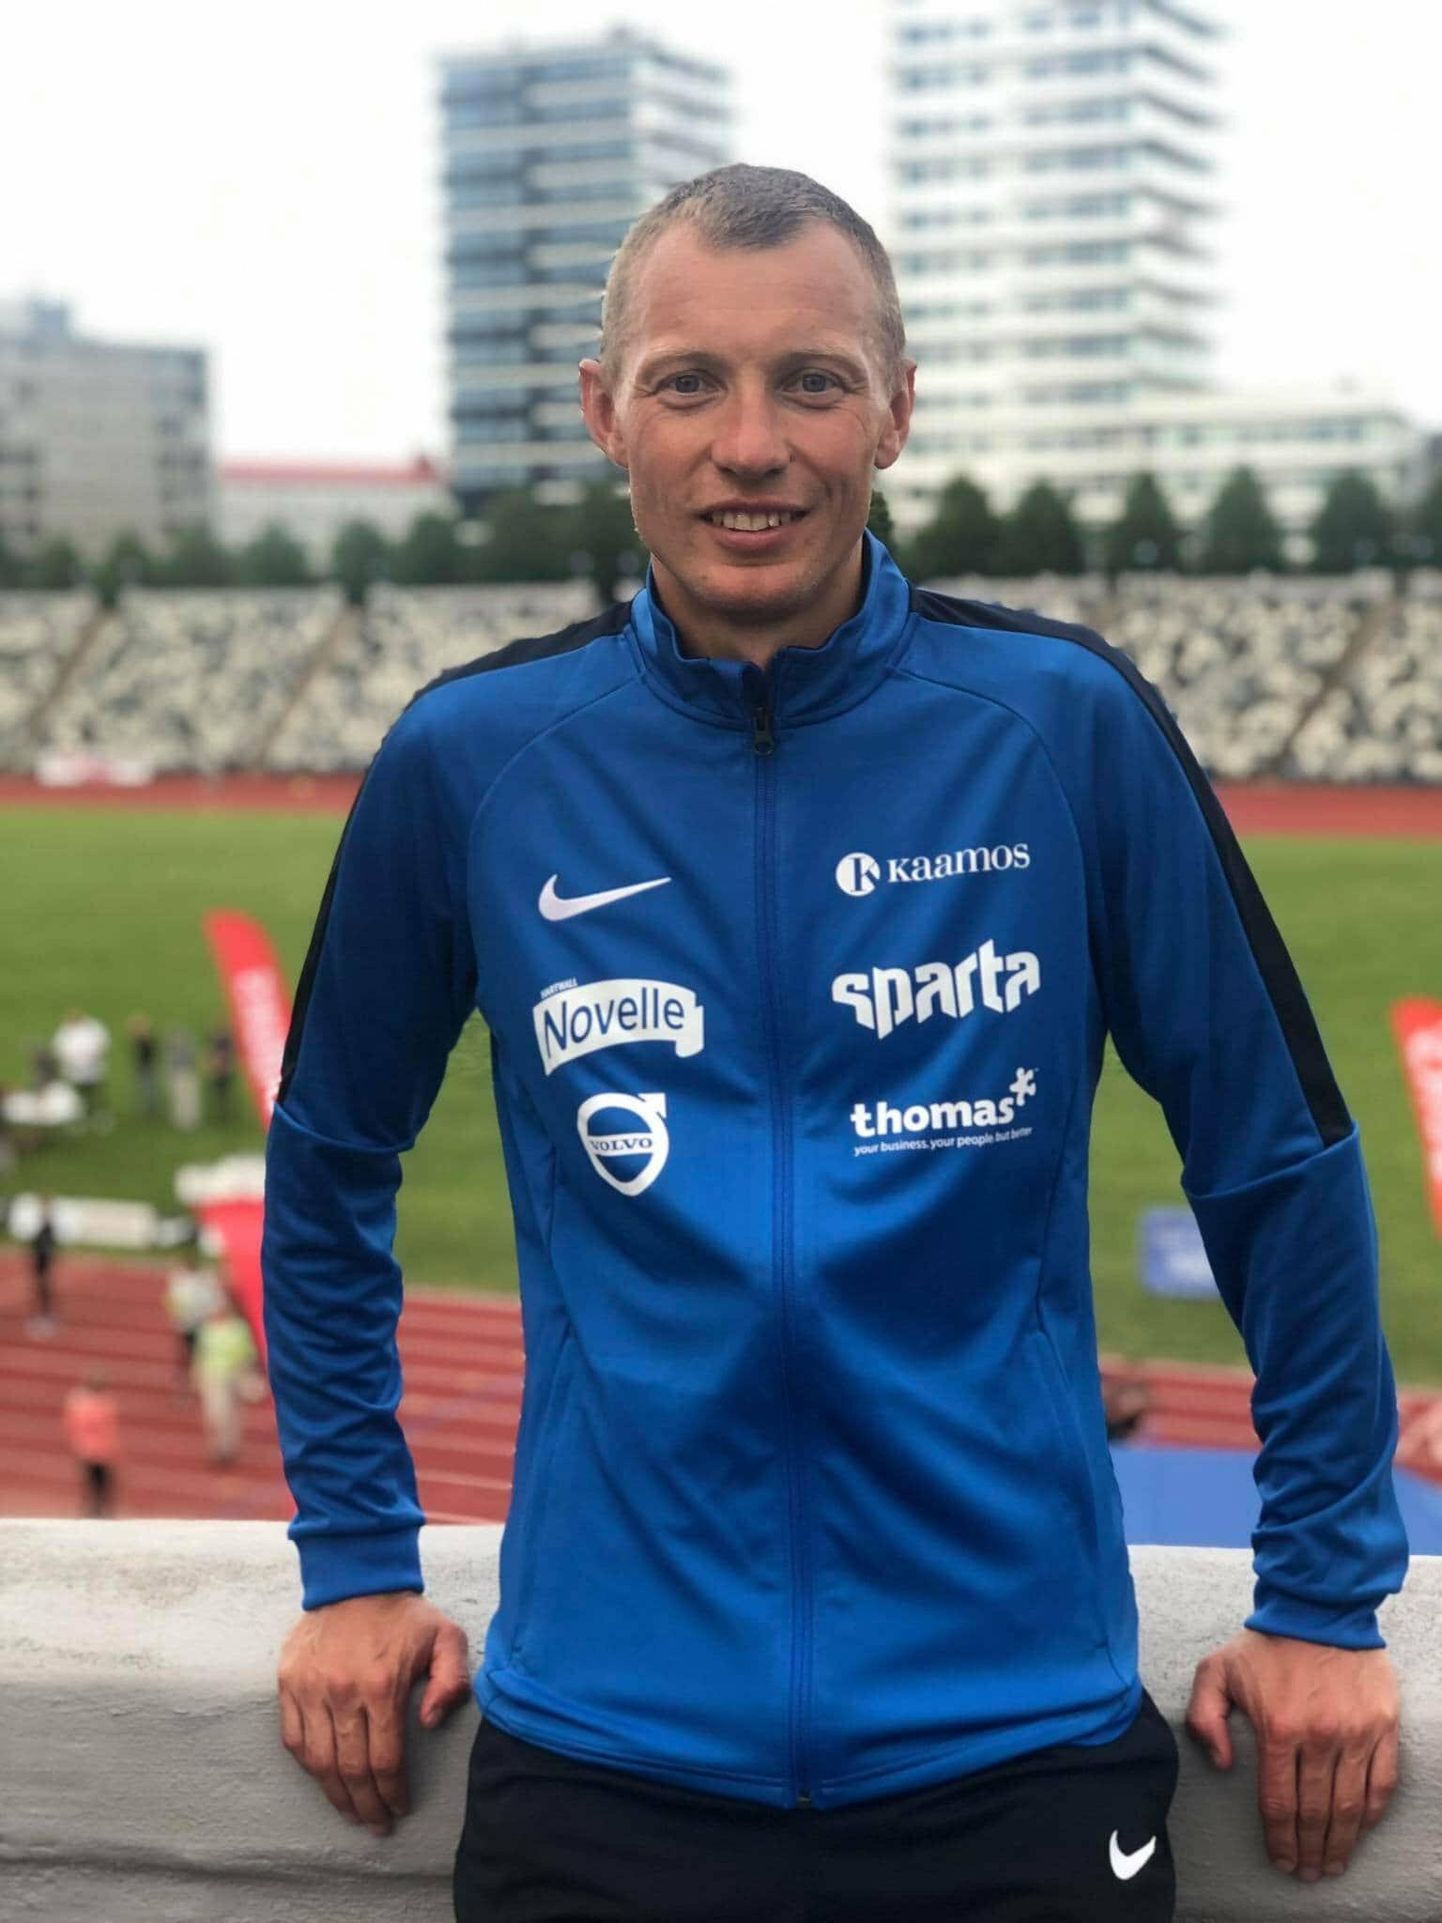 Roman Fosti tuleb Türi staadionile miili jooksma, et pakkuda Türi maratonisarjas osalejaile konkurentsi ja innustada inimesi jooksma.